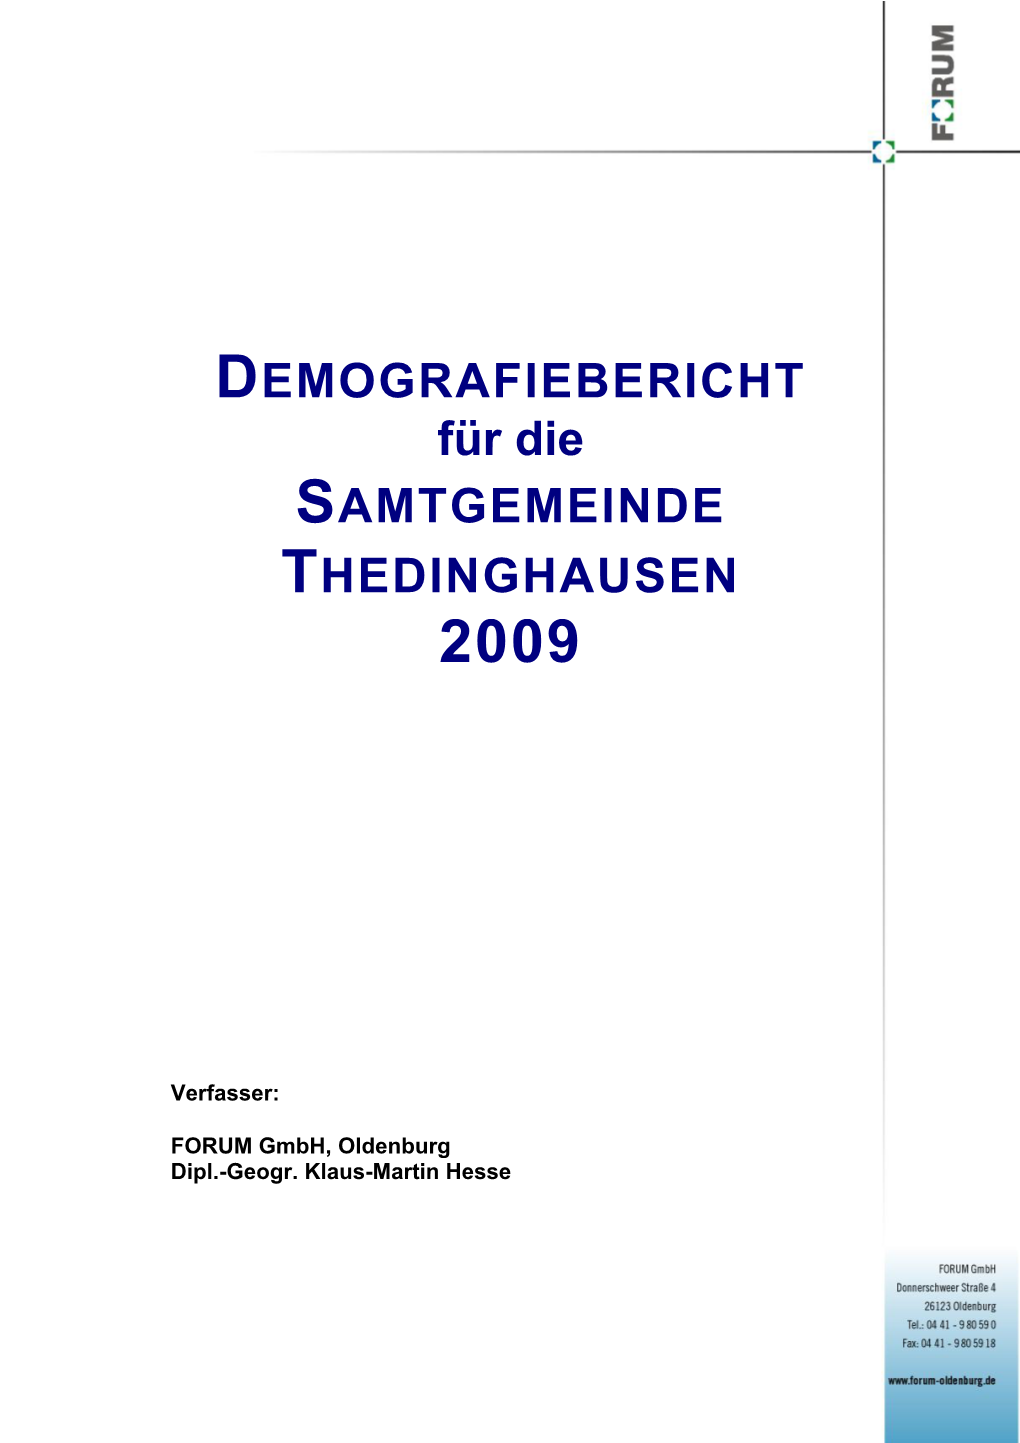 DEMOGRAFIEBERICHT Für Die SAMTGEMEINDE THEDINGHAUSEN 2009